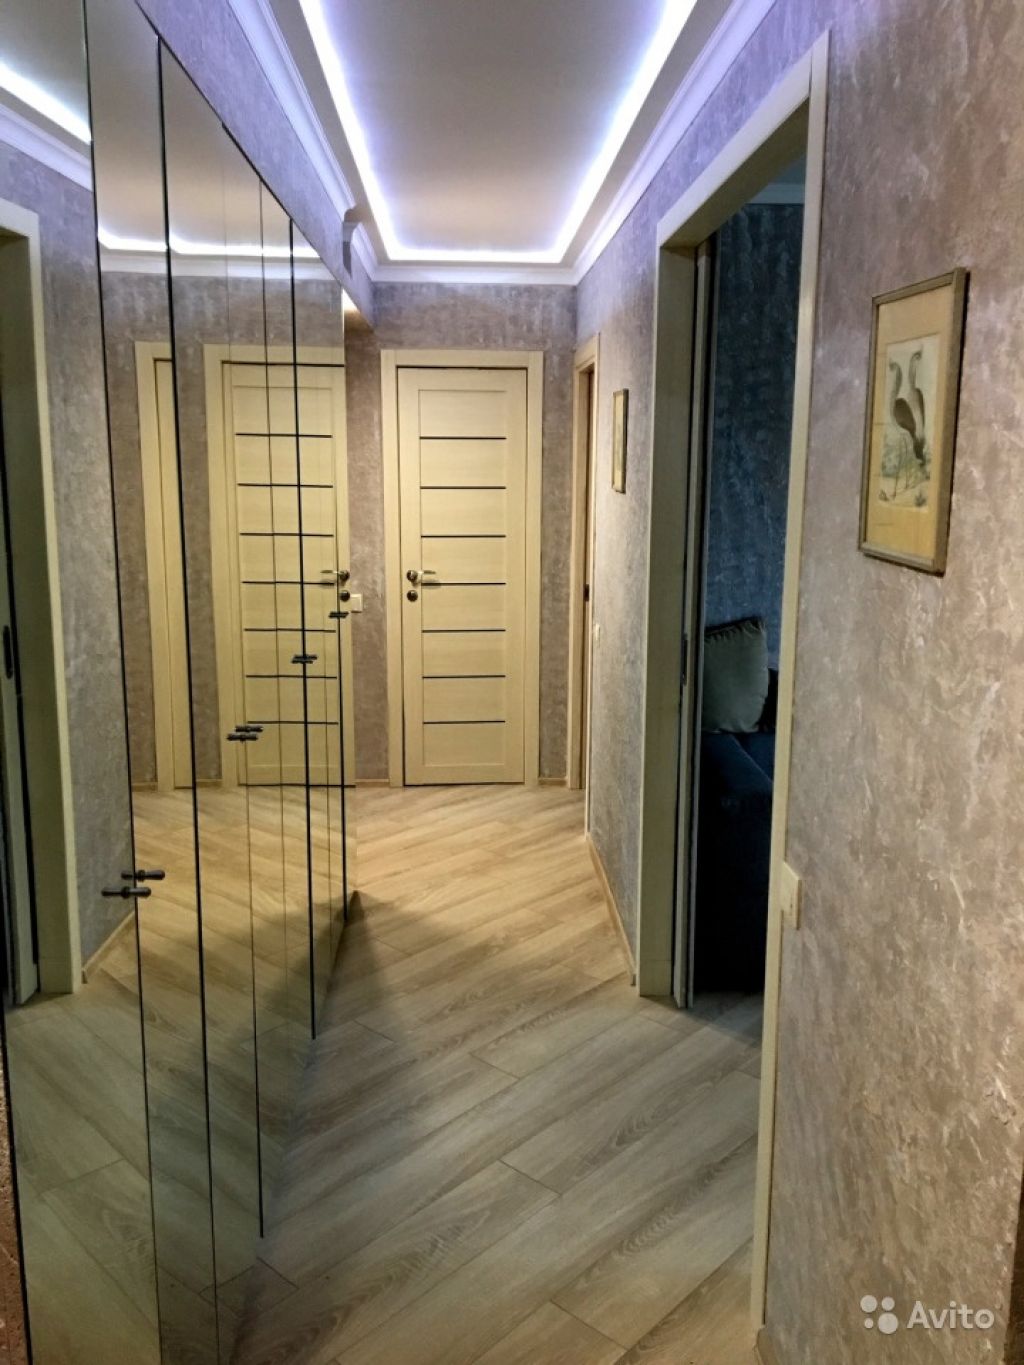 Продам квартиру 3-к квартира 58 м² на 7 этаже 9-этажного кирпичного дома в Москве. Фото 1